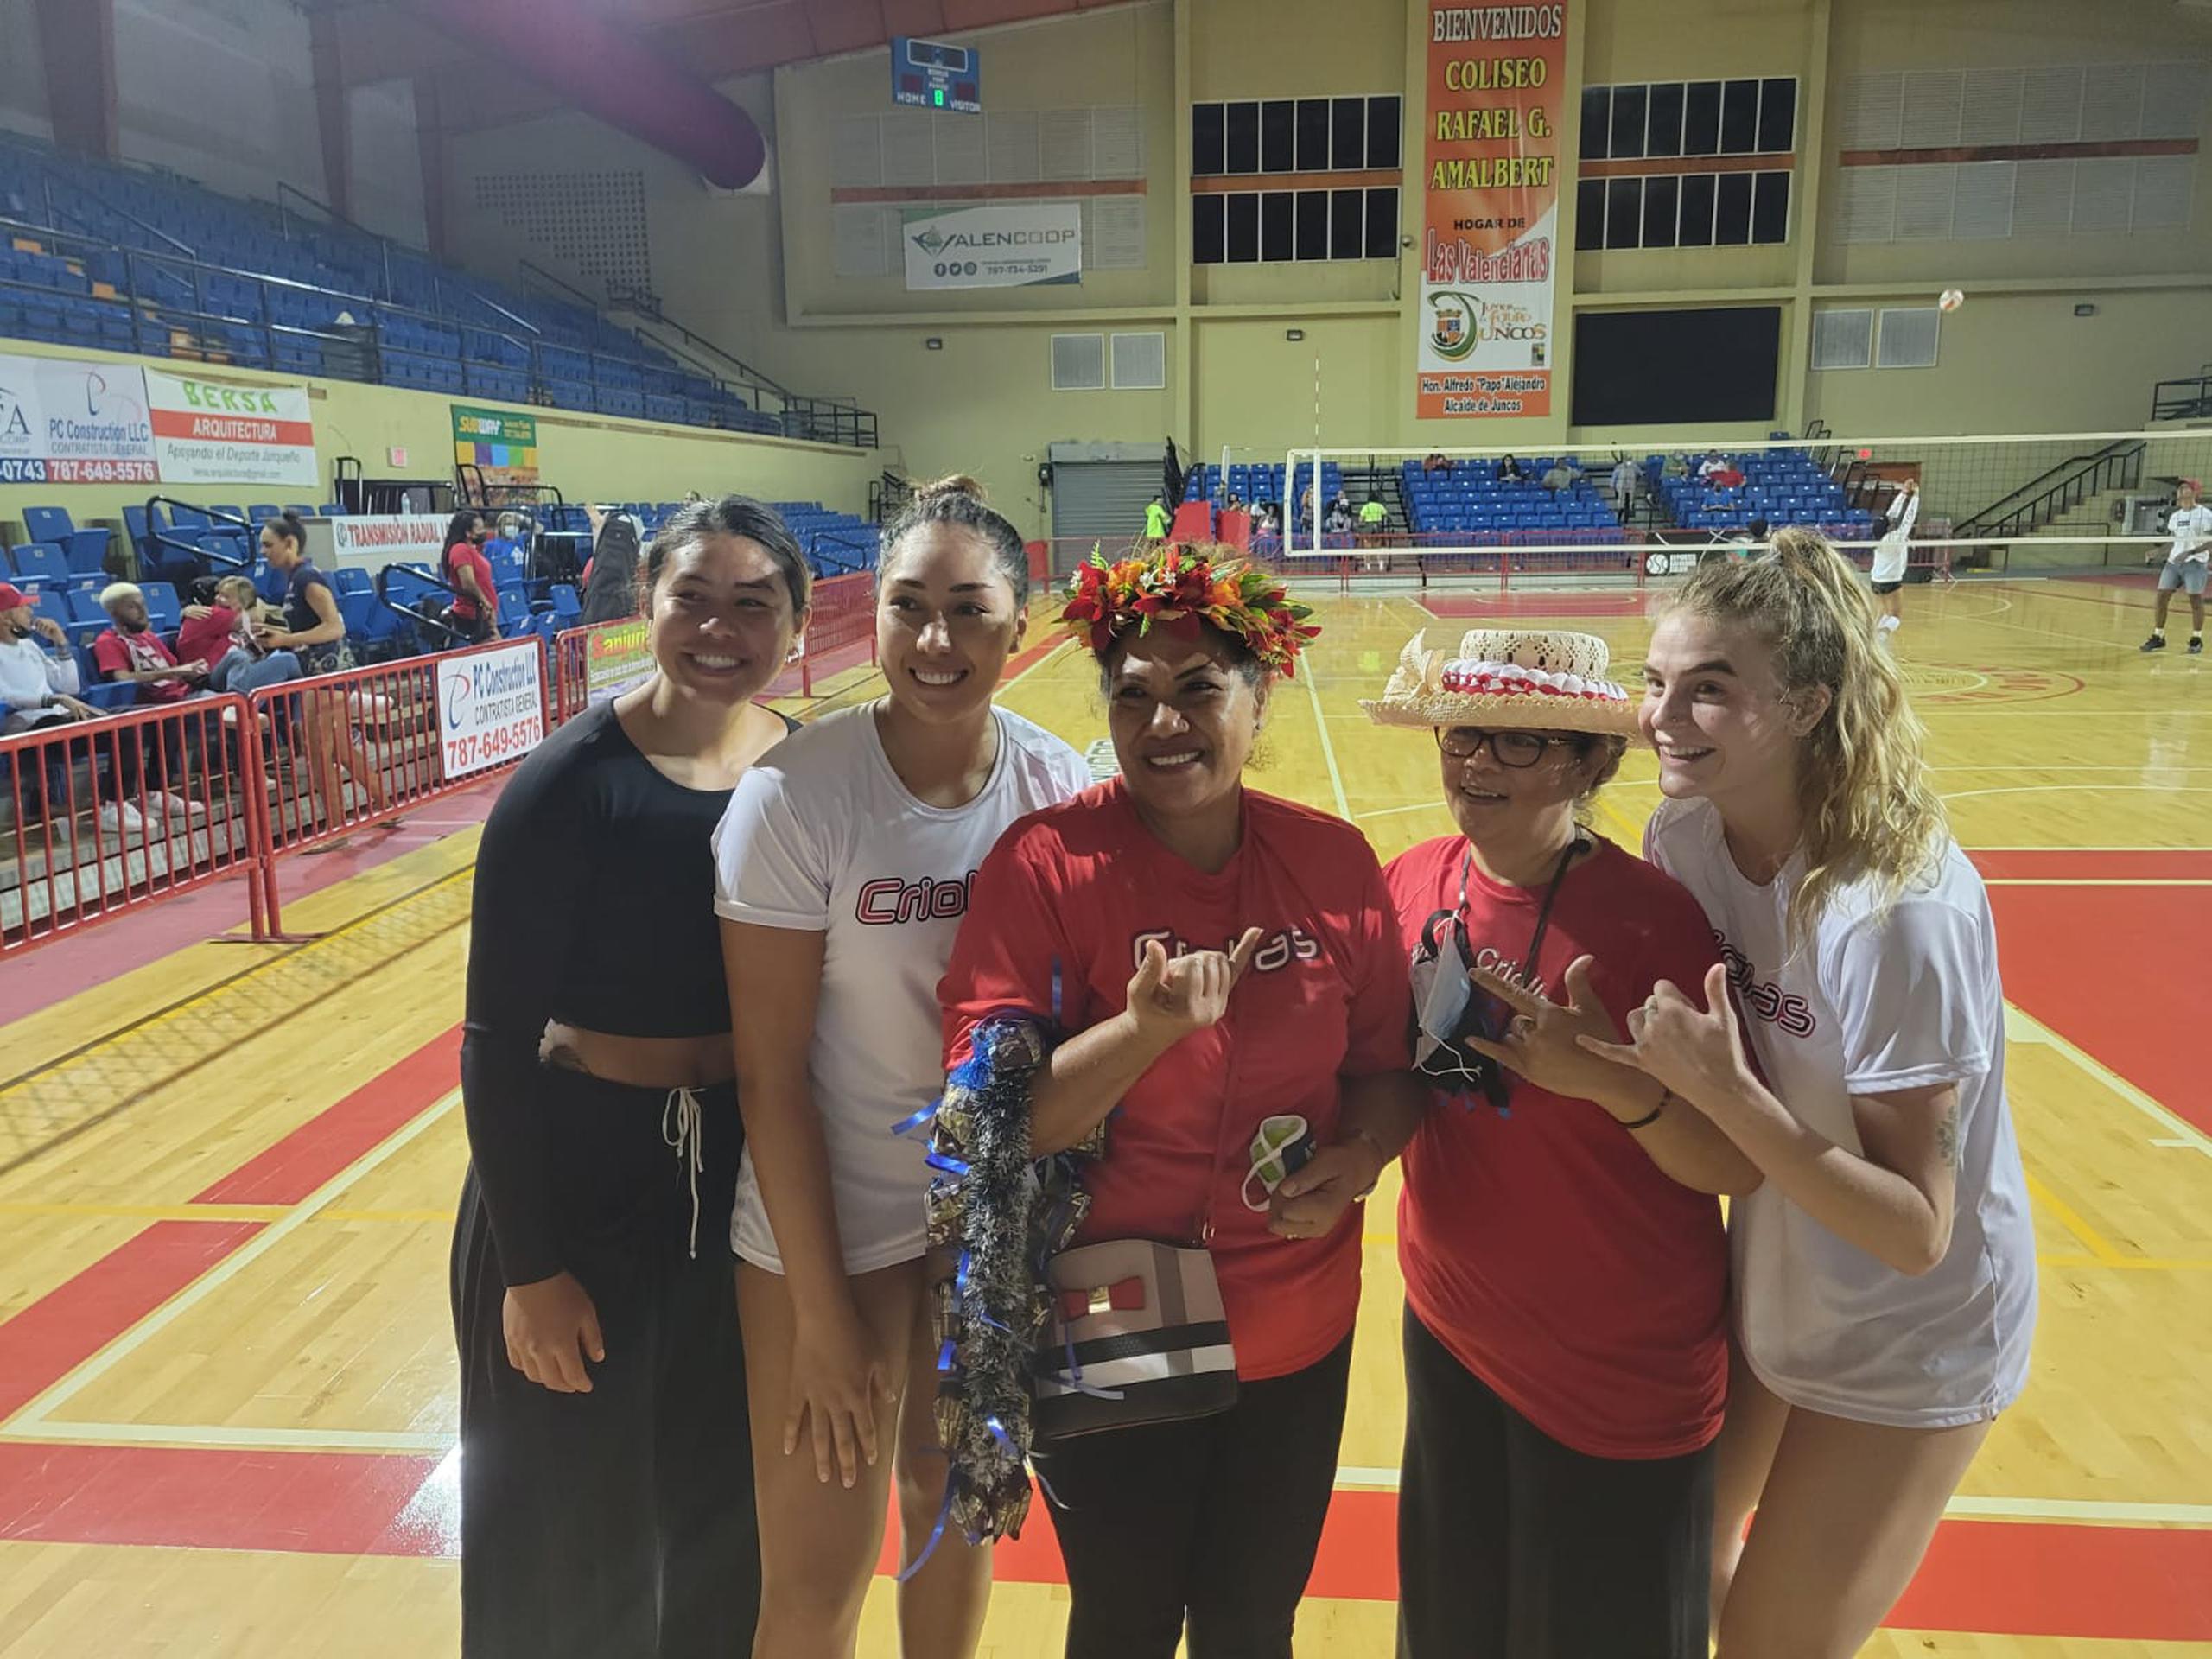 Kalei Mau y Adora Anae, ambas desde la izquierda, son jugadoras hawaianas activas en el Voleibol Superior boricua. Junto a ellas está la madre y tía de Anae, y la jugadora estadounidense Lindsay Sandbothe. Para Mau y Anae, el que Puerto Rico tenga una ciudadanía deportiva autónoma es un privilegio.